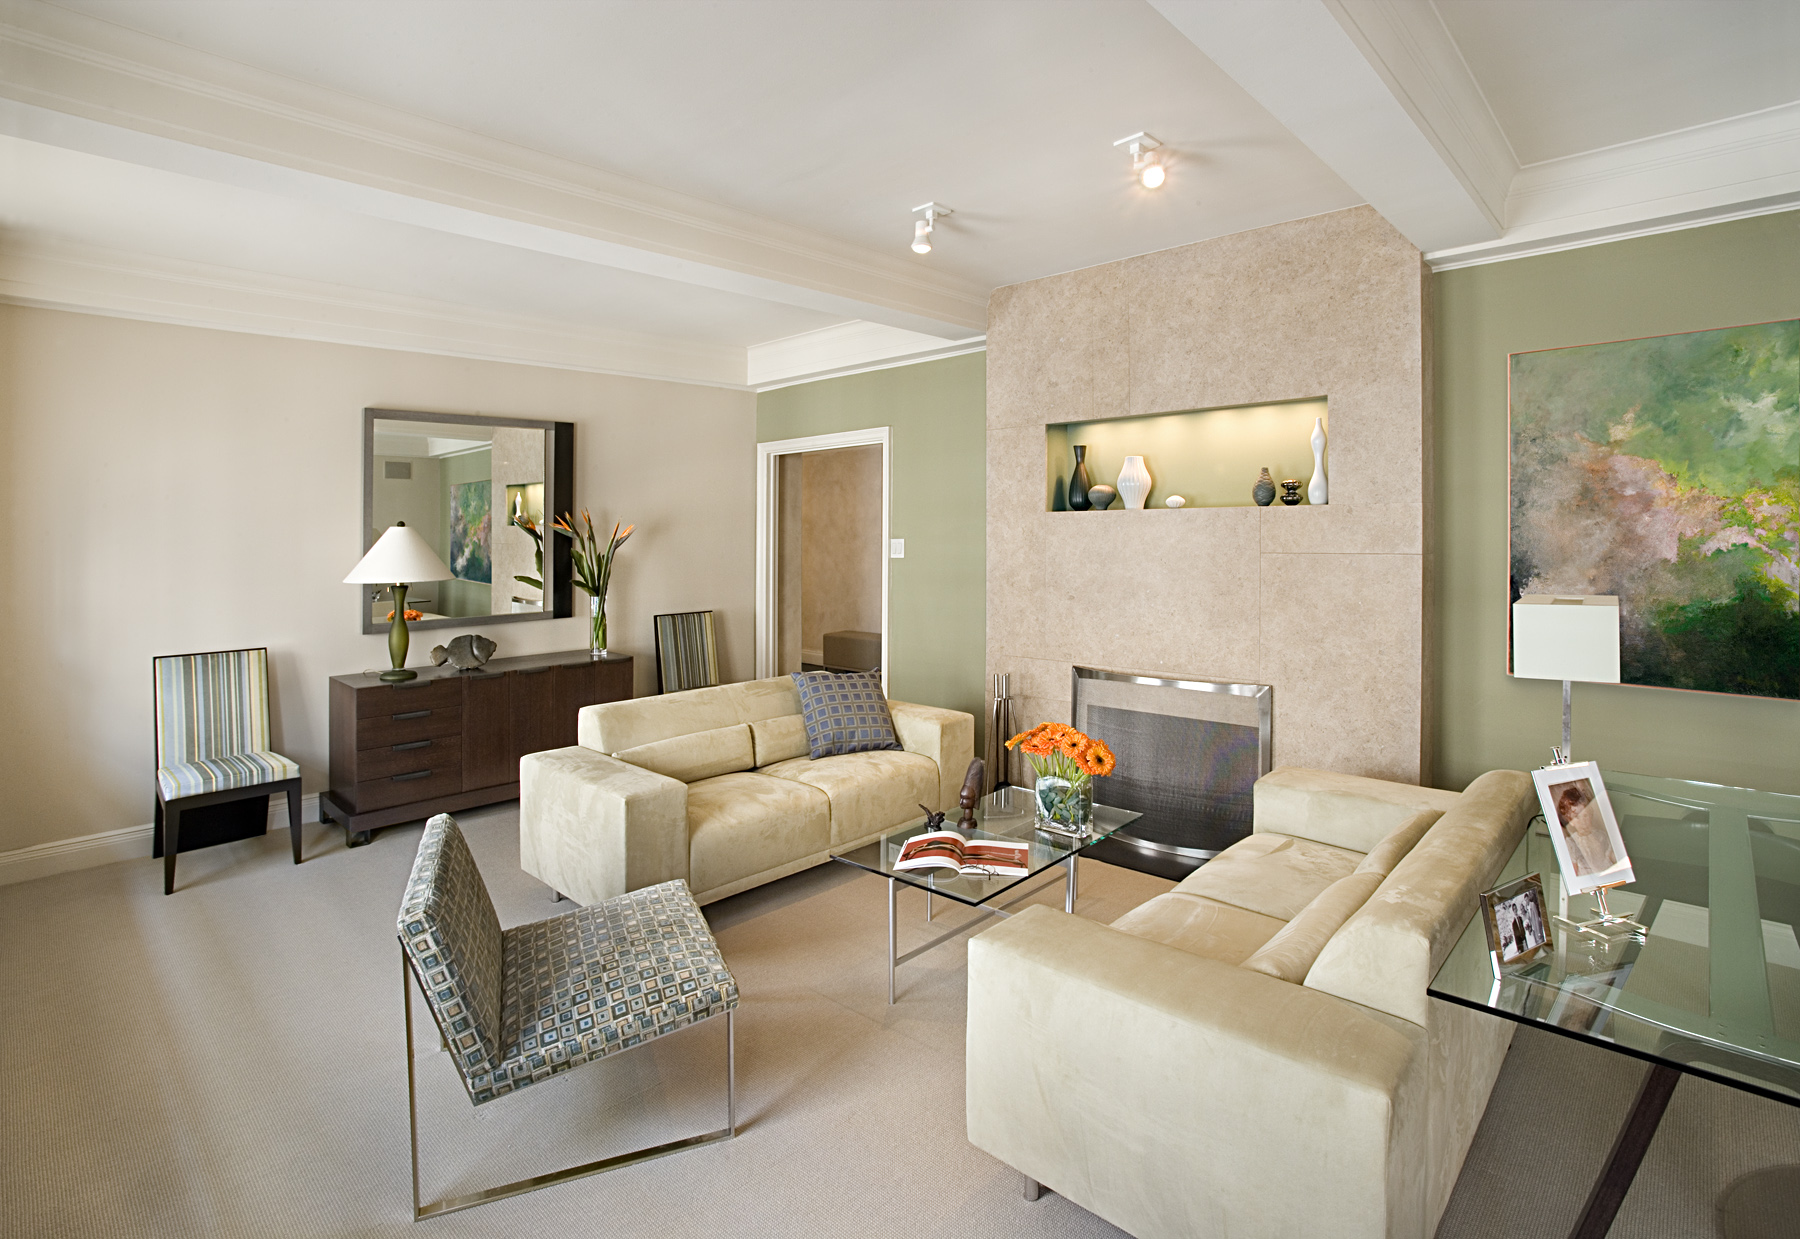 Private Residence. Tobin Parnes Design. Residential. Living Room.